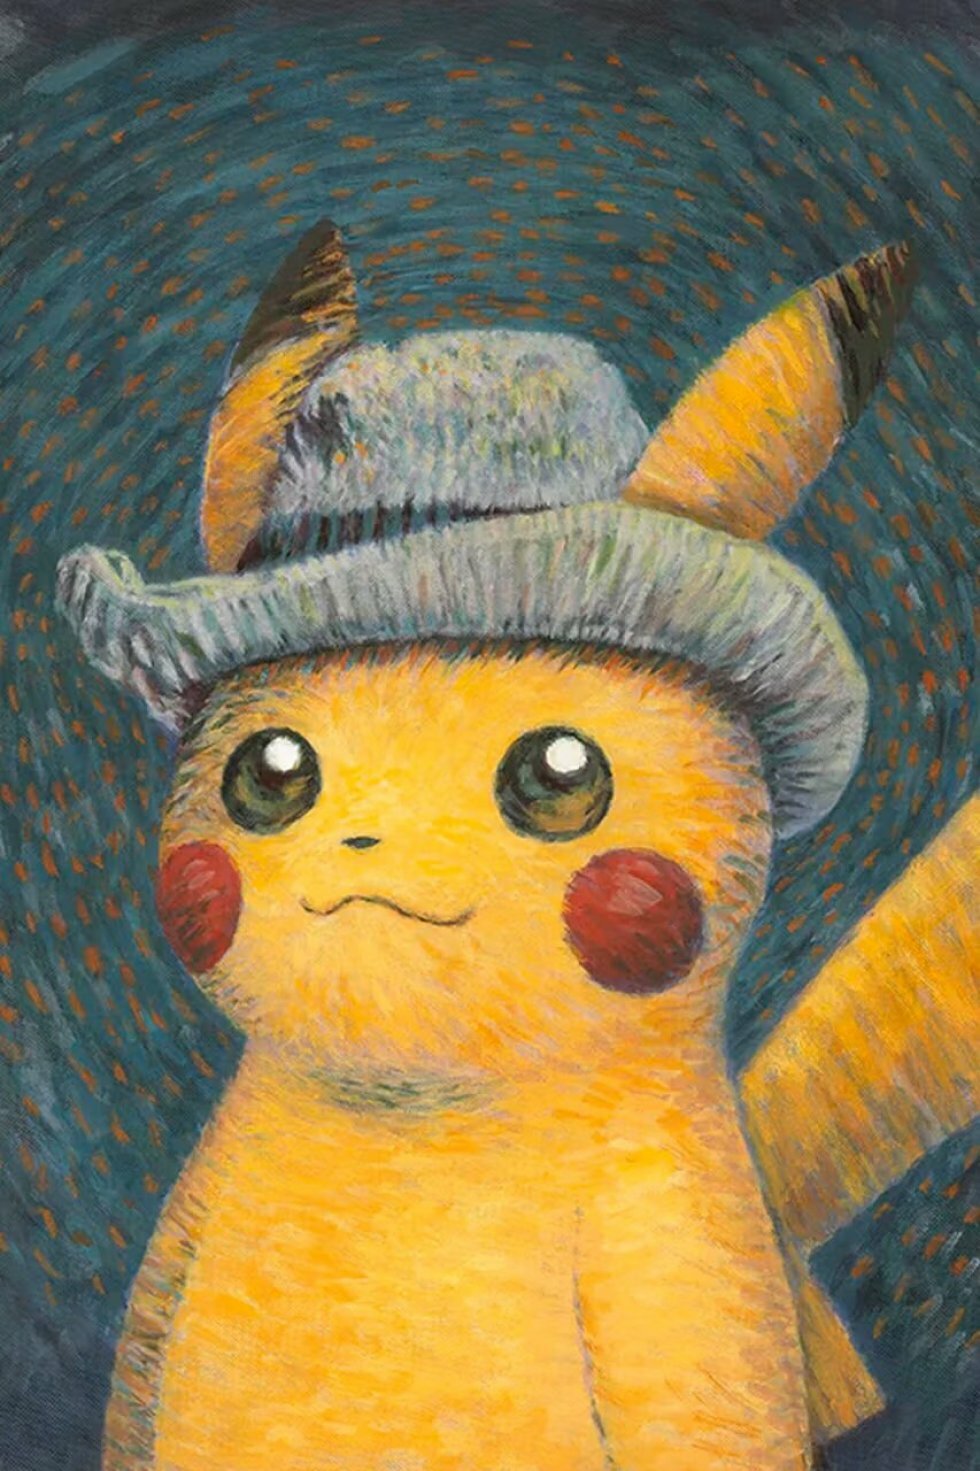 Pikachu-kortet. - Pokemon-udstilling på Van Gogh-museum skaber kæmpe efterspørgsel på unikt Pikachu-kort